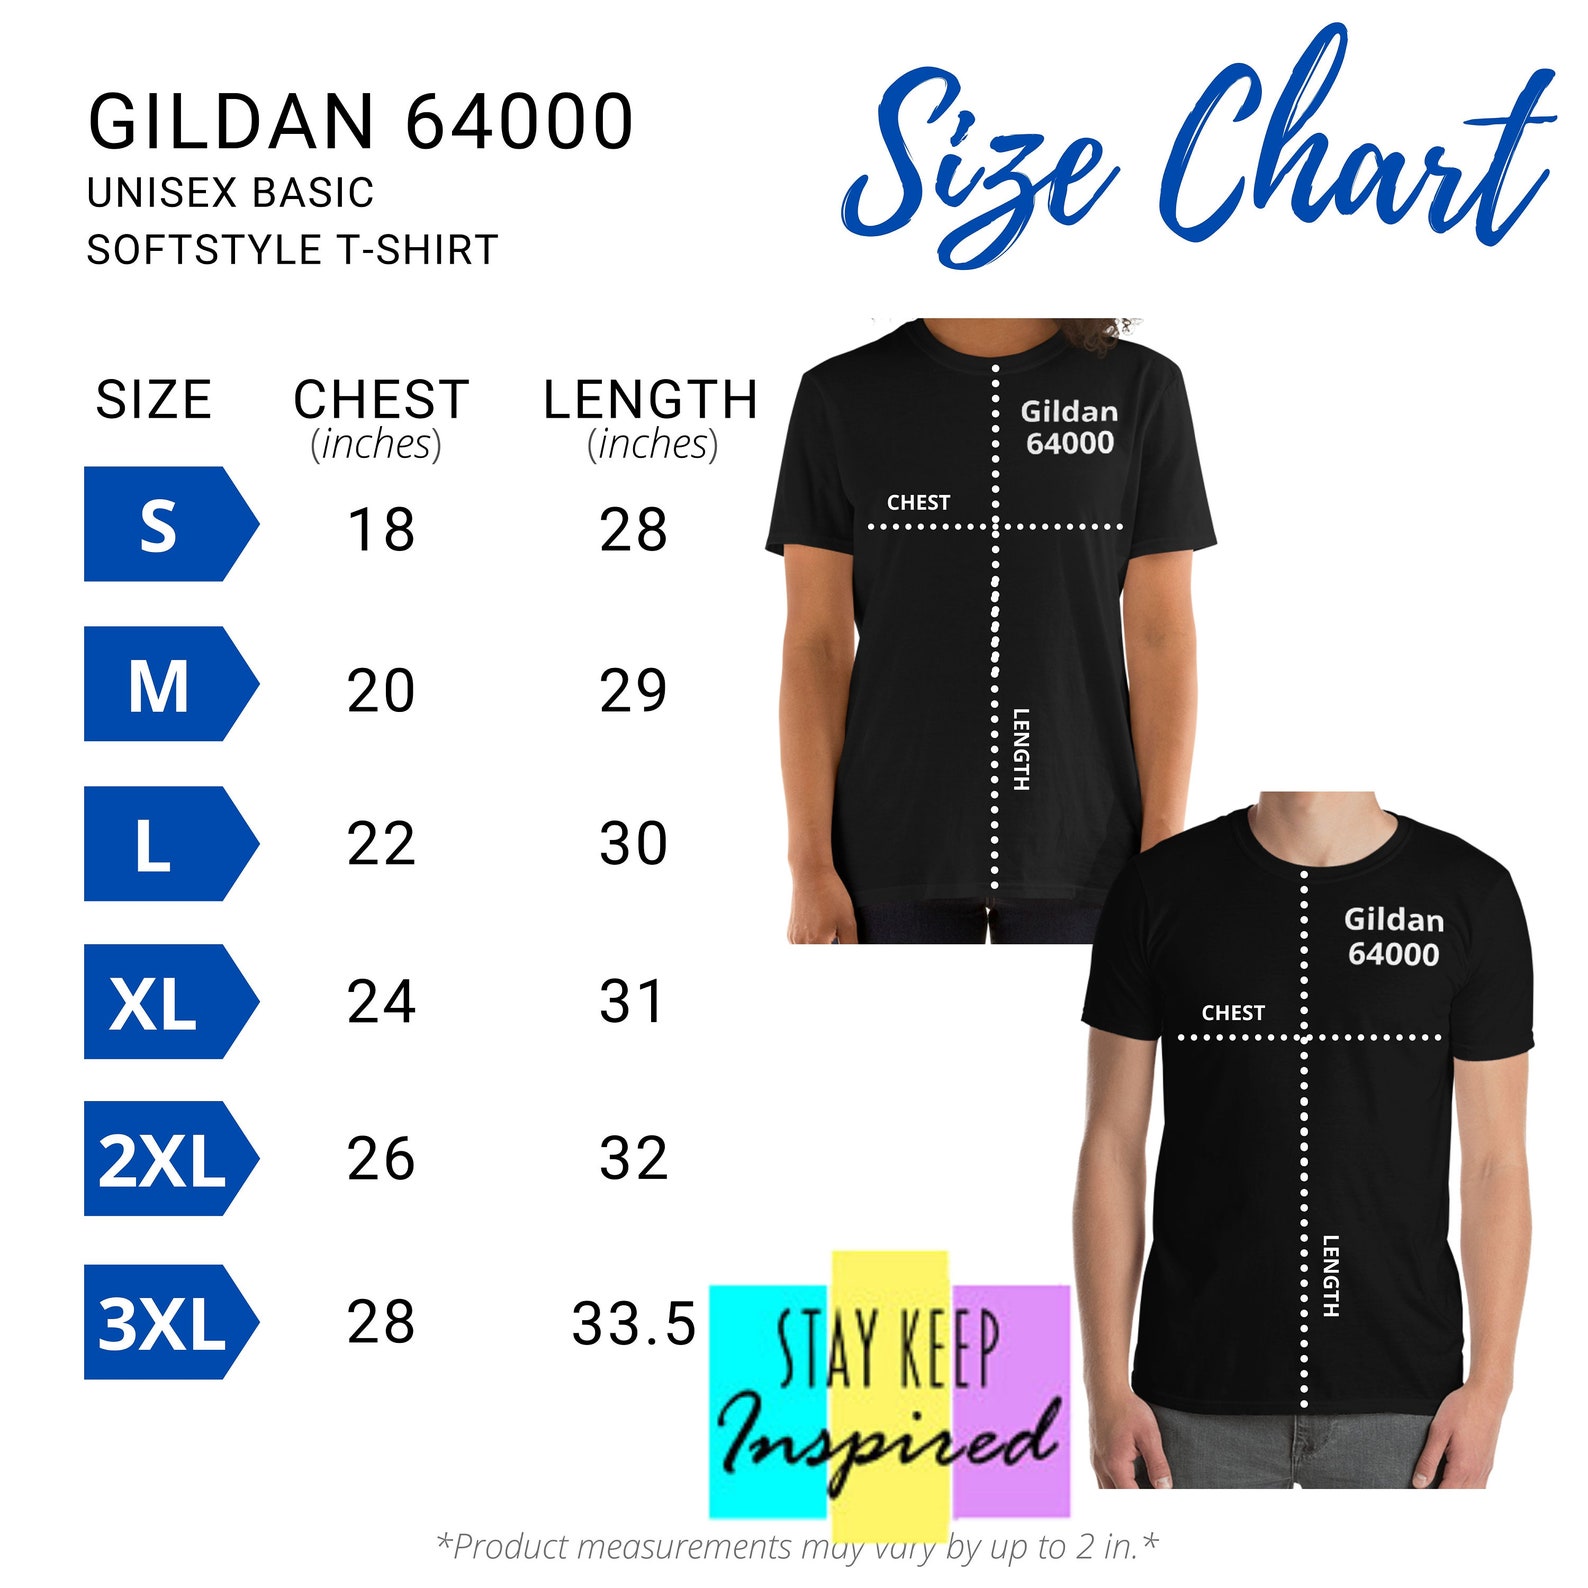 gildan-64000-unisex-basic-softstyle-t-shirt-size-chart-etsy